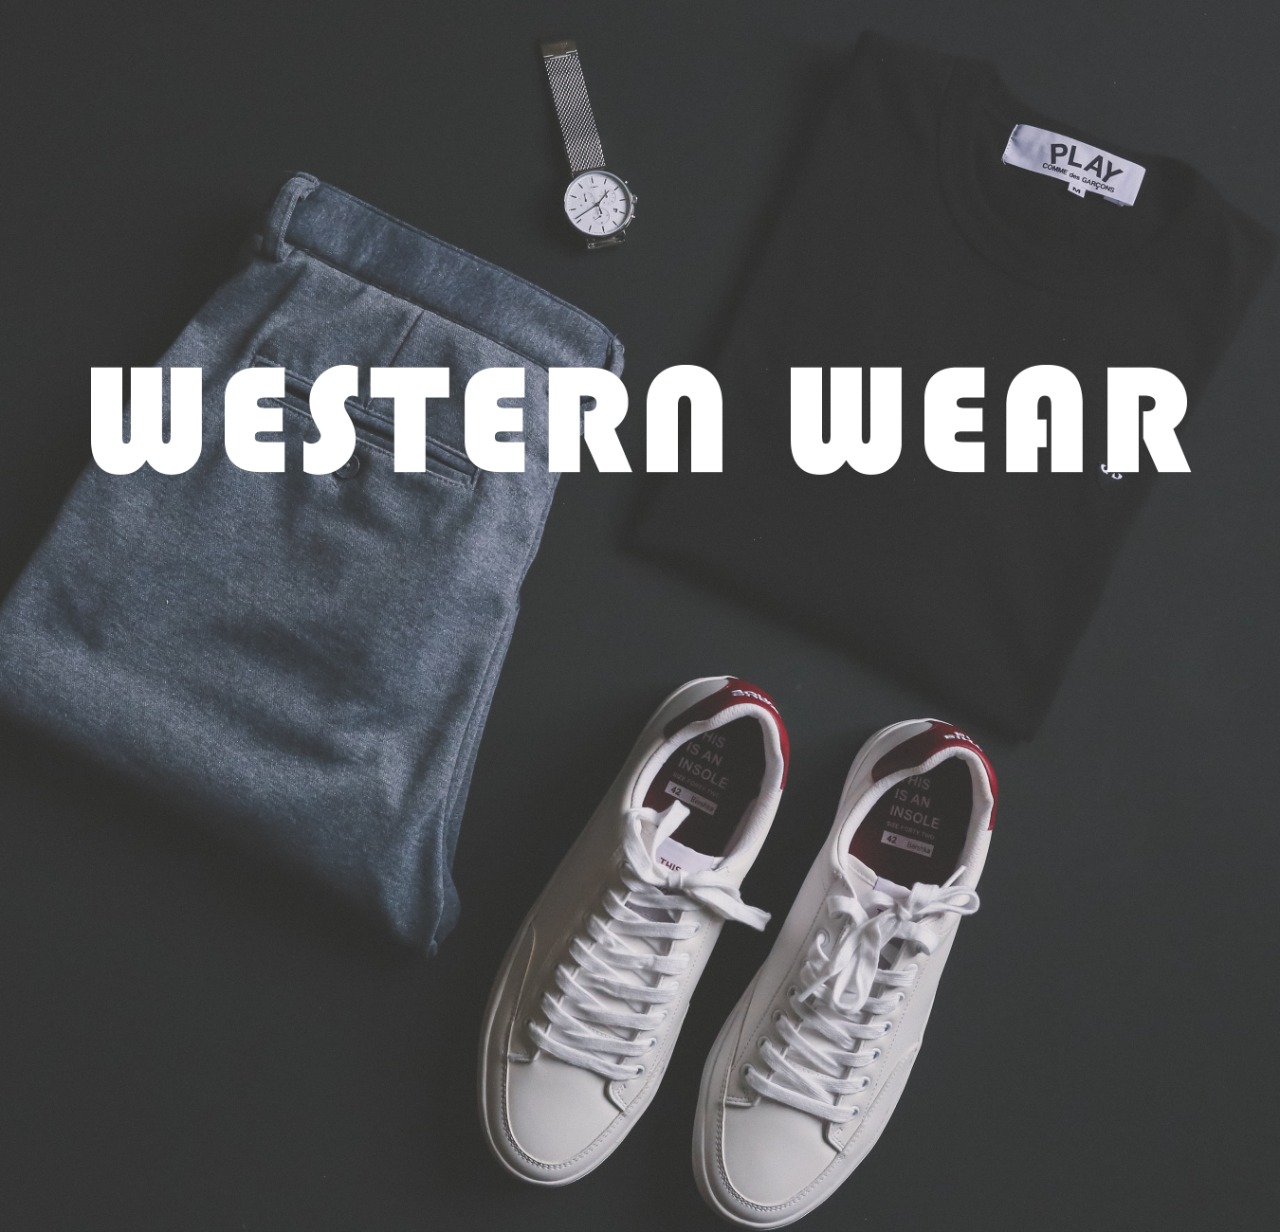 Western-wear